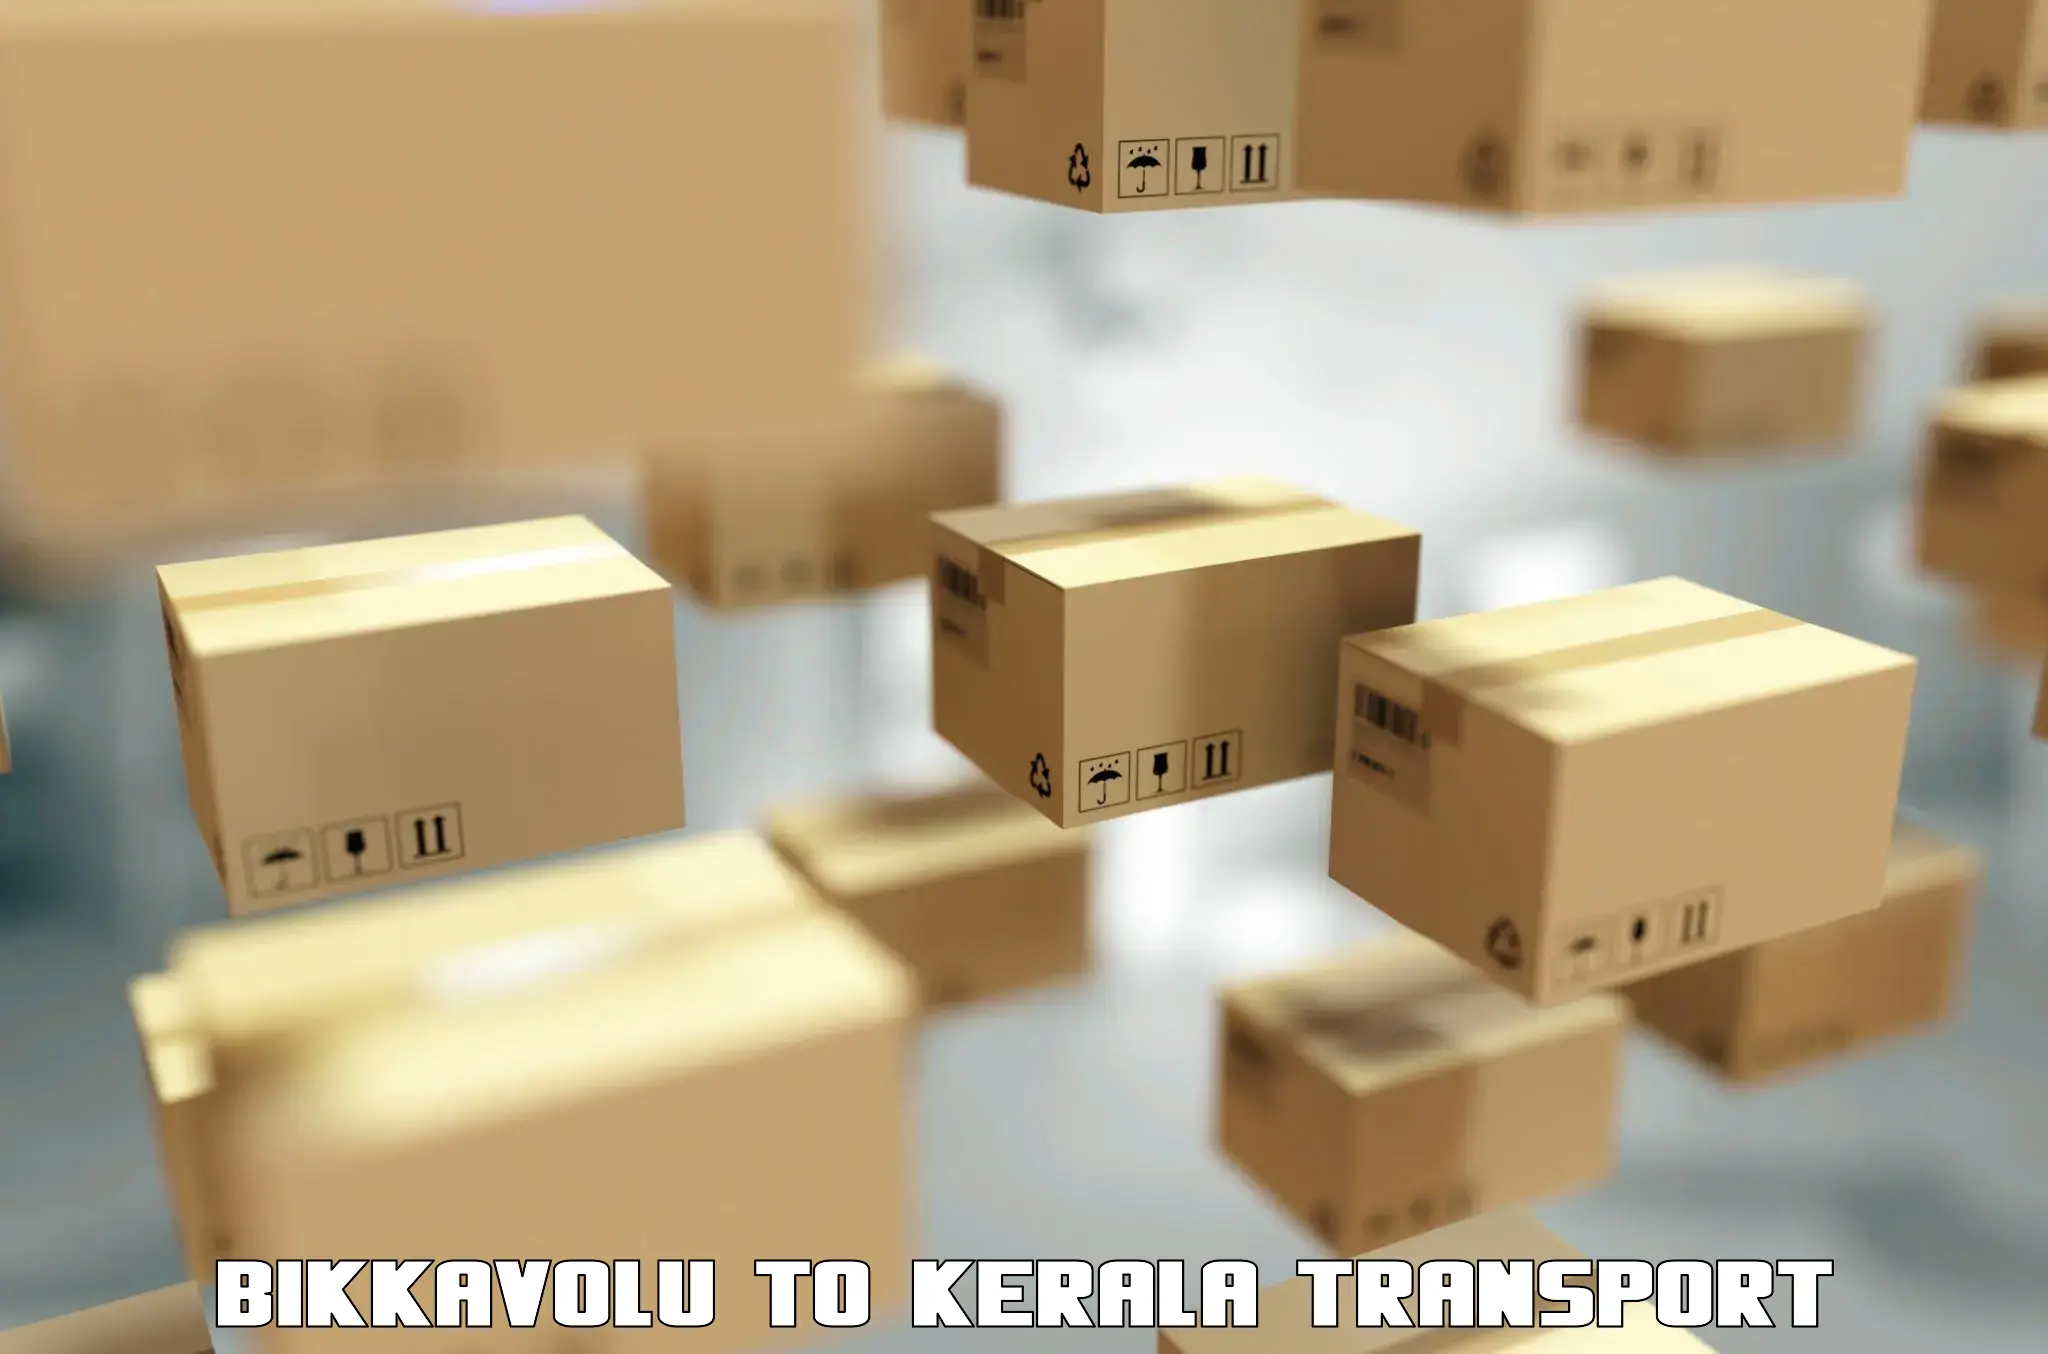 Cargo train transport services Bikkavolu to Thrissur